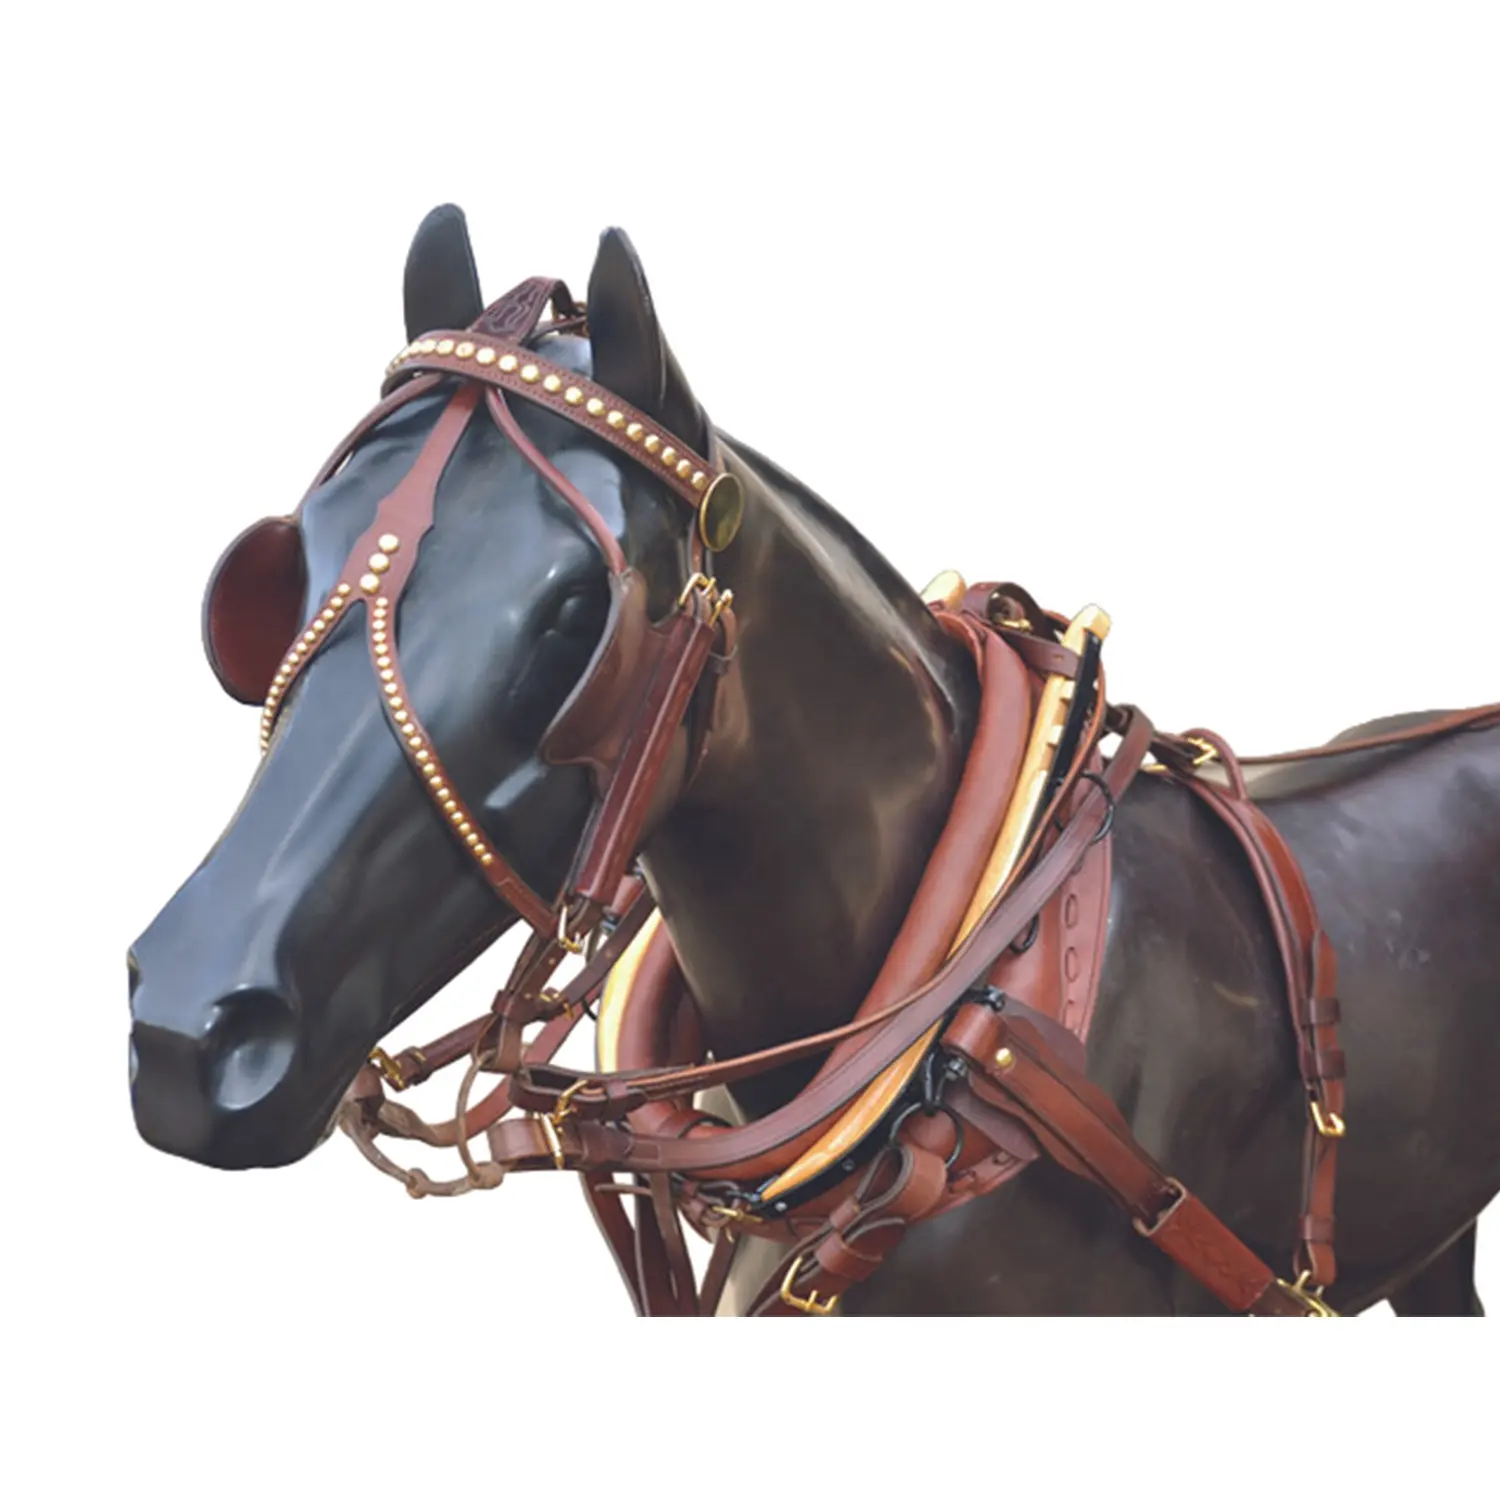 Arnés de conducción de caballos Quick Hitch Arnés de conducción de caballos completo con acolchado suave hecho a mano por Horse World